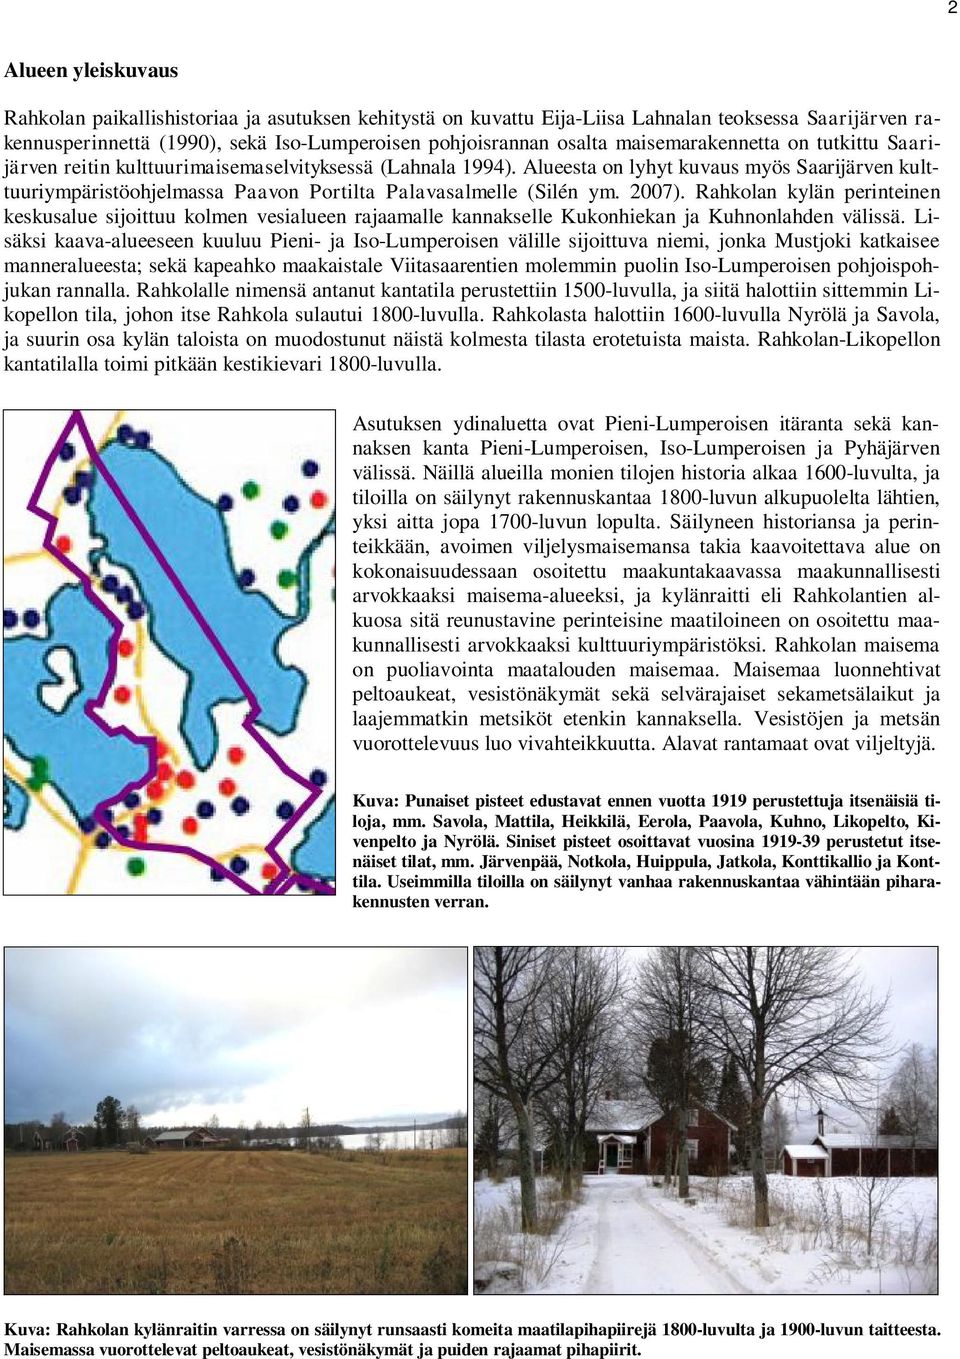 Alueesta on lyhyt kuvaus myös Saarijärven kulttuuriympäristöohjelmassa Paavon Portilta Palavasalmelle (Silén ym. 2007).